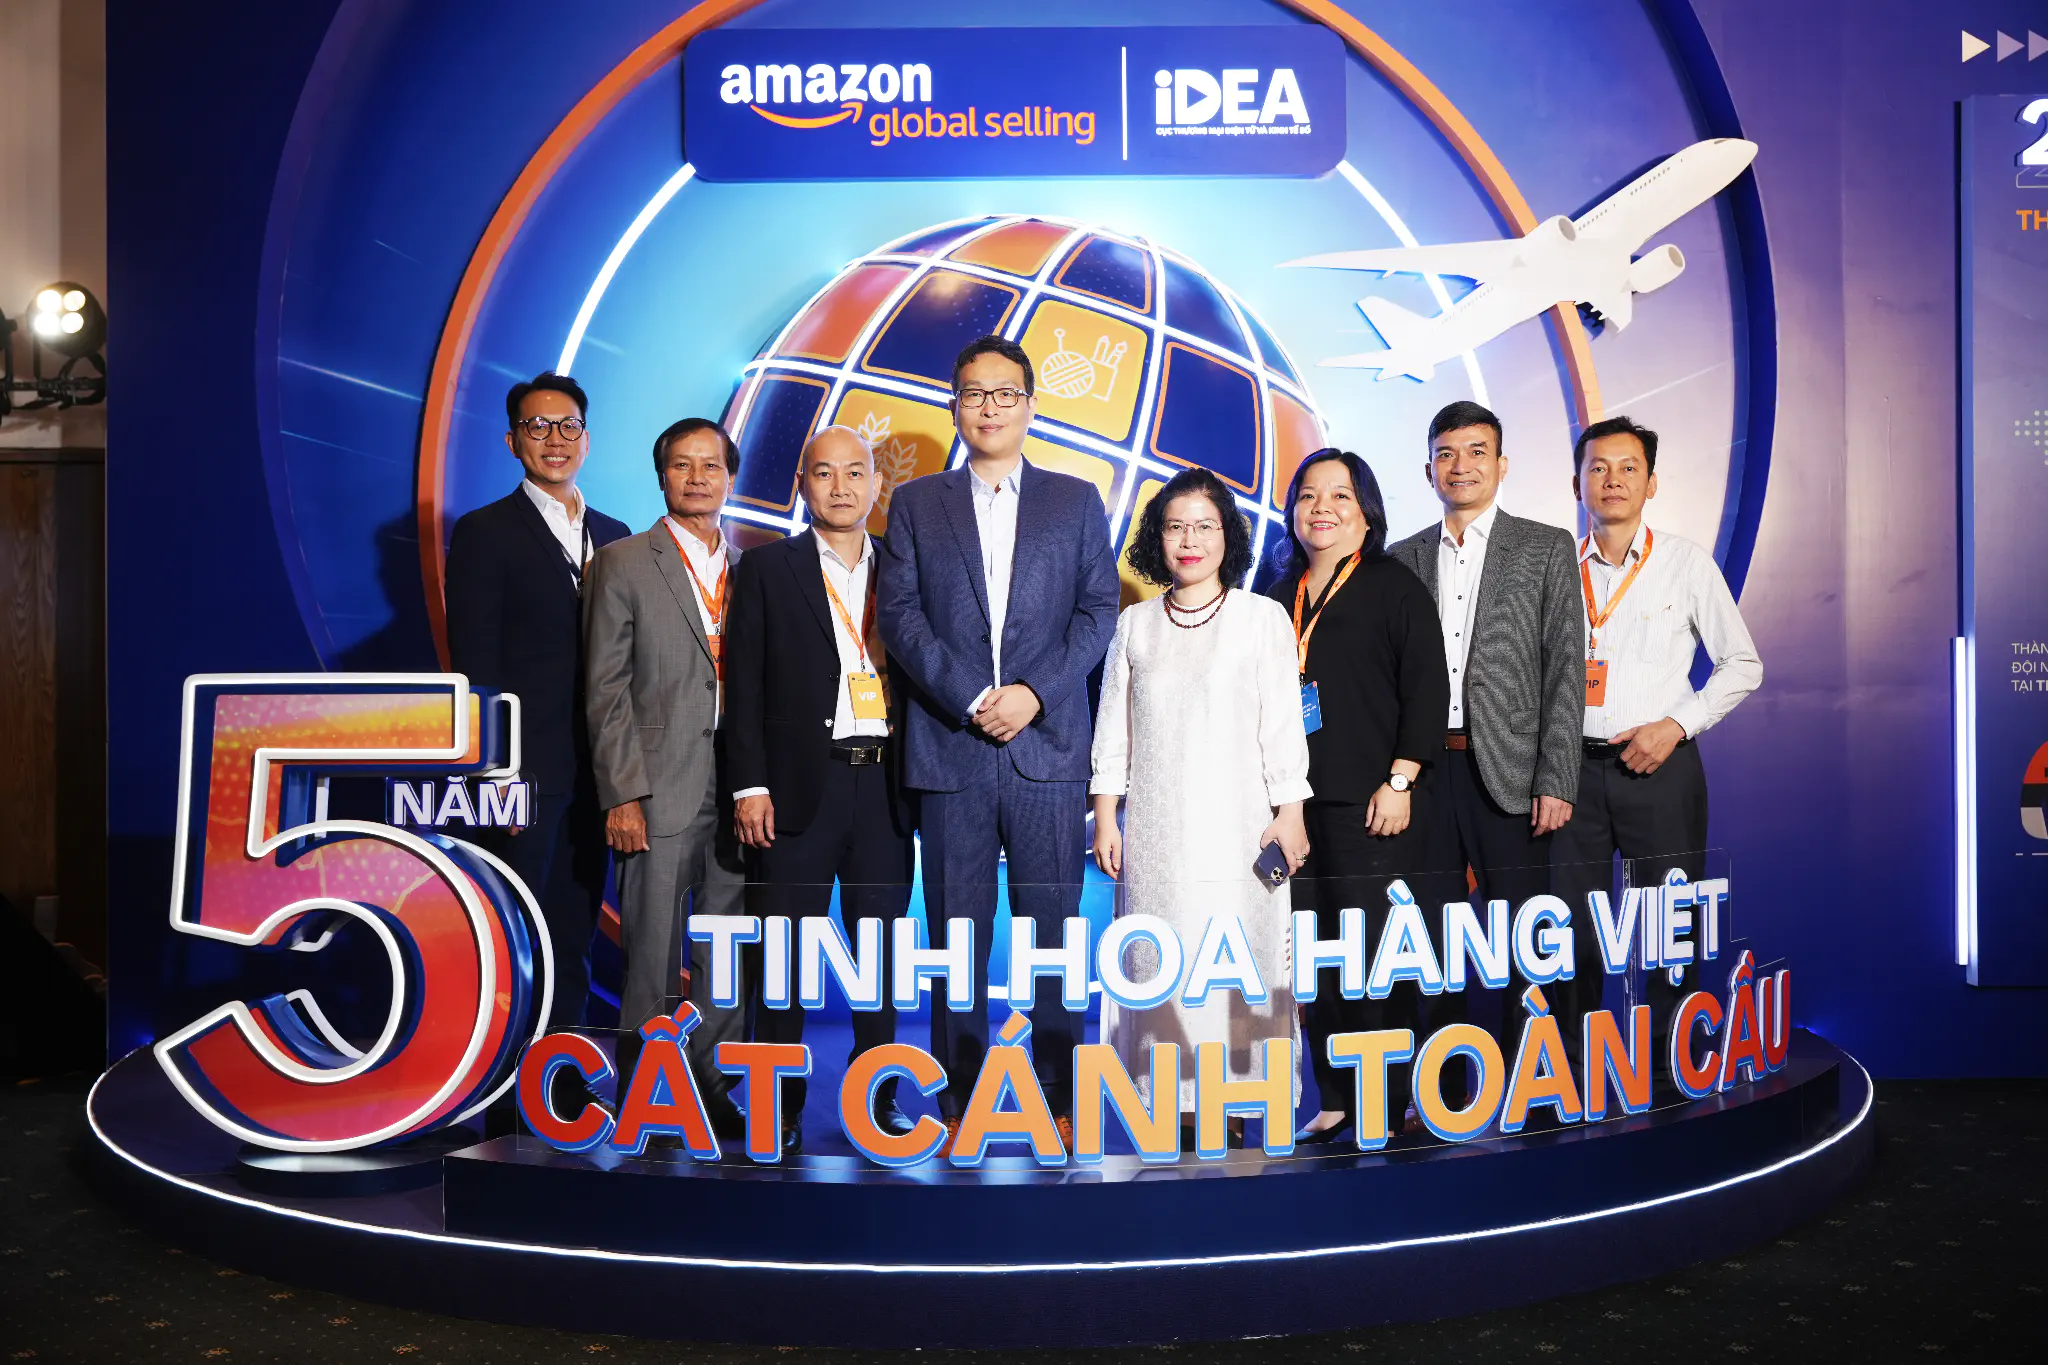 Amazon Global Selling công bố top ngành hàng Made-in-Vietnam xuất khẩu trực tuyến tăng trưởng cao nhất